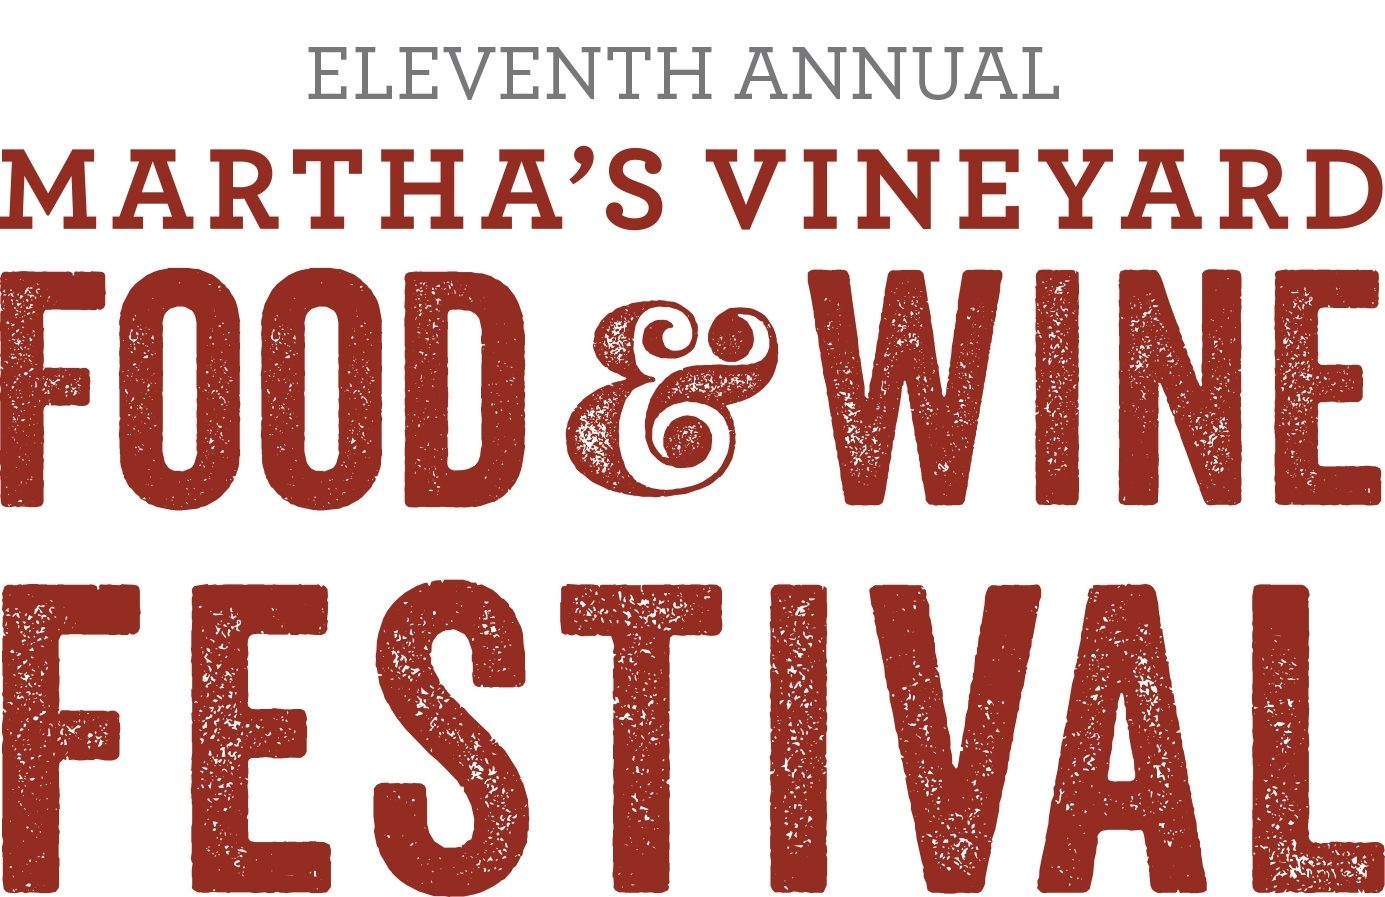 2018 Marthas Vineyard Food and Wine Festival